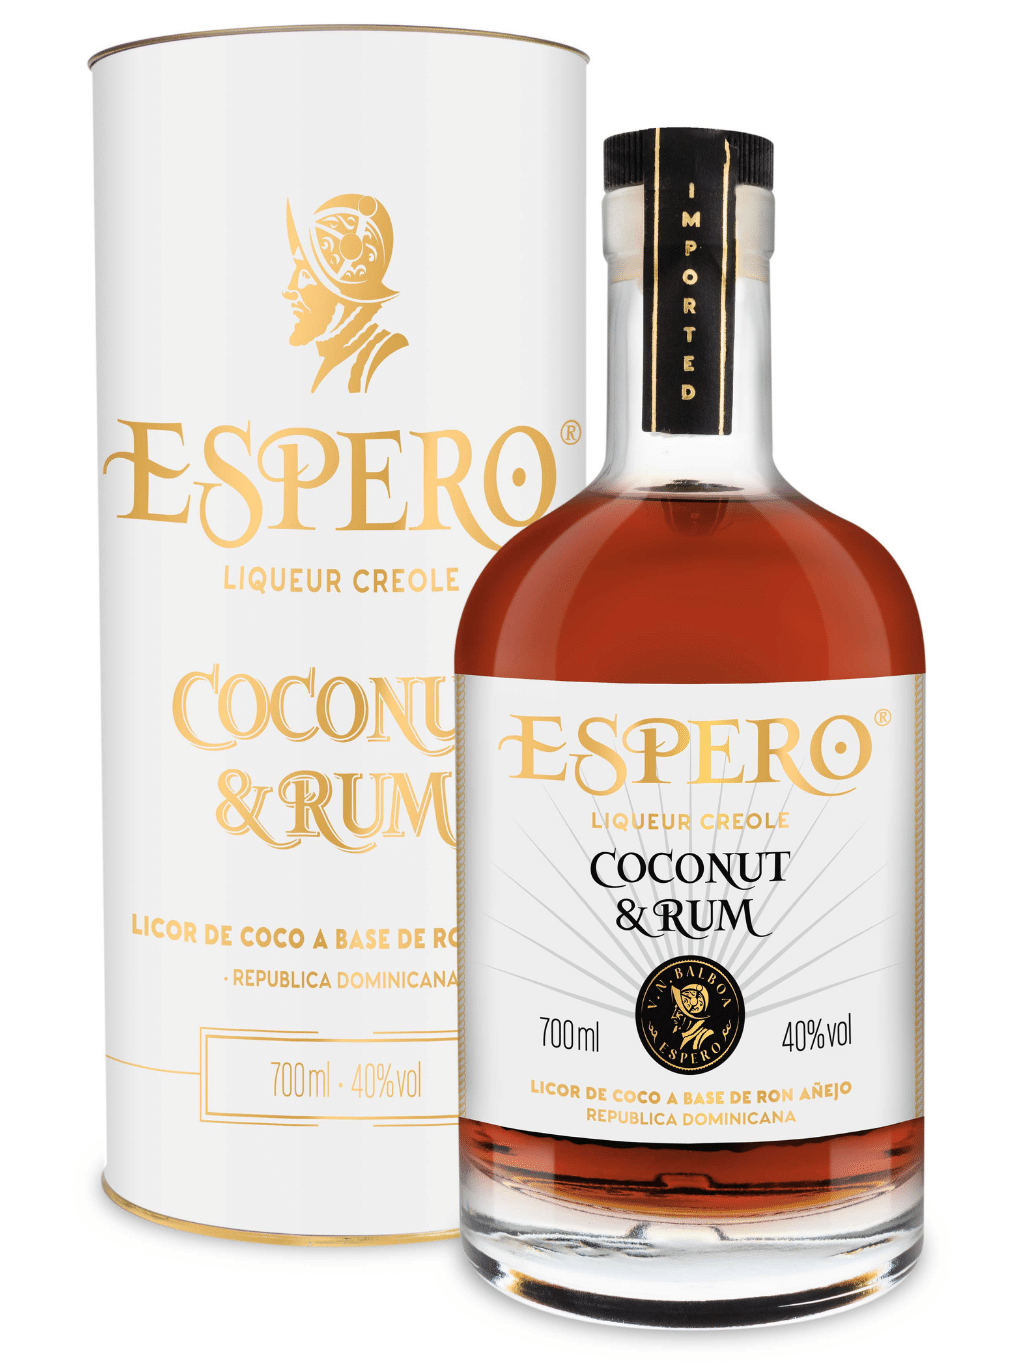 ALBERT MICHLER Espero Coconut & Rum 40% 0,7l